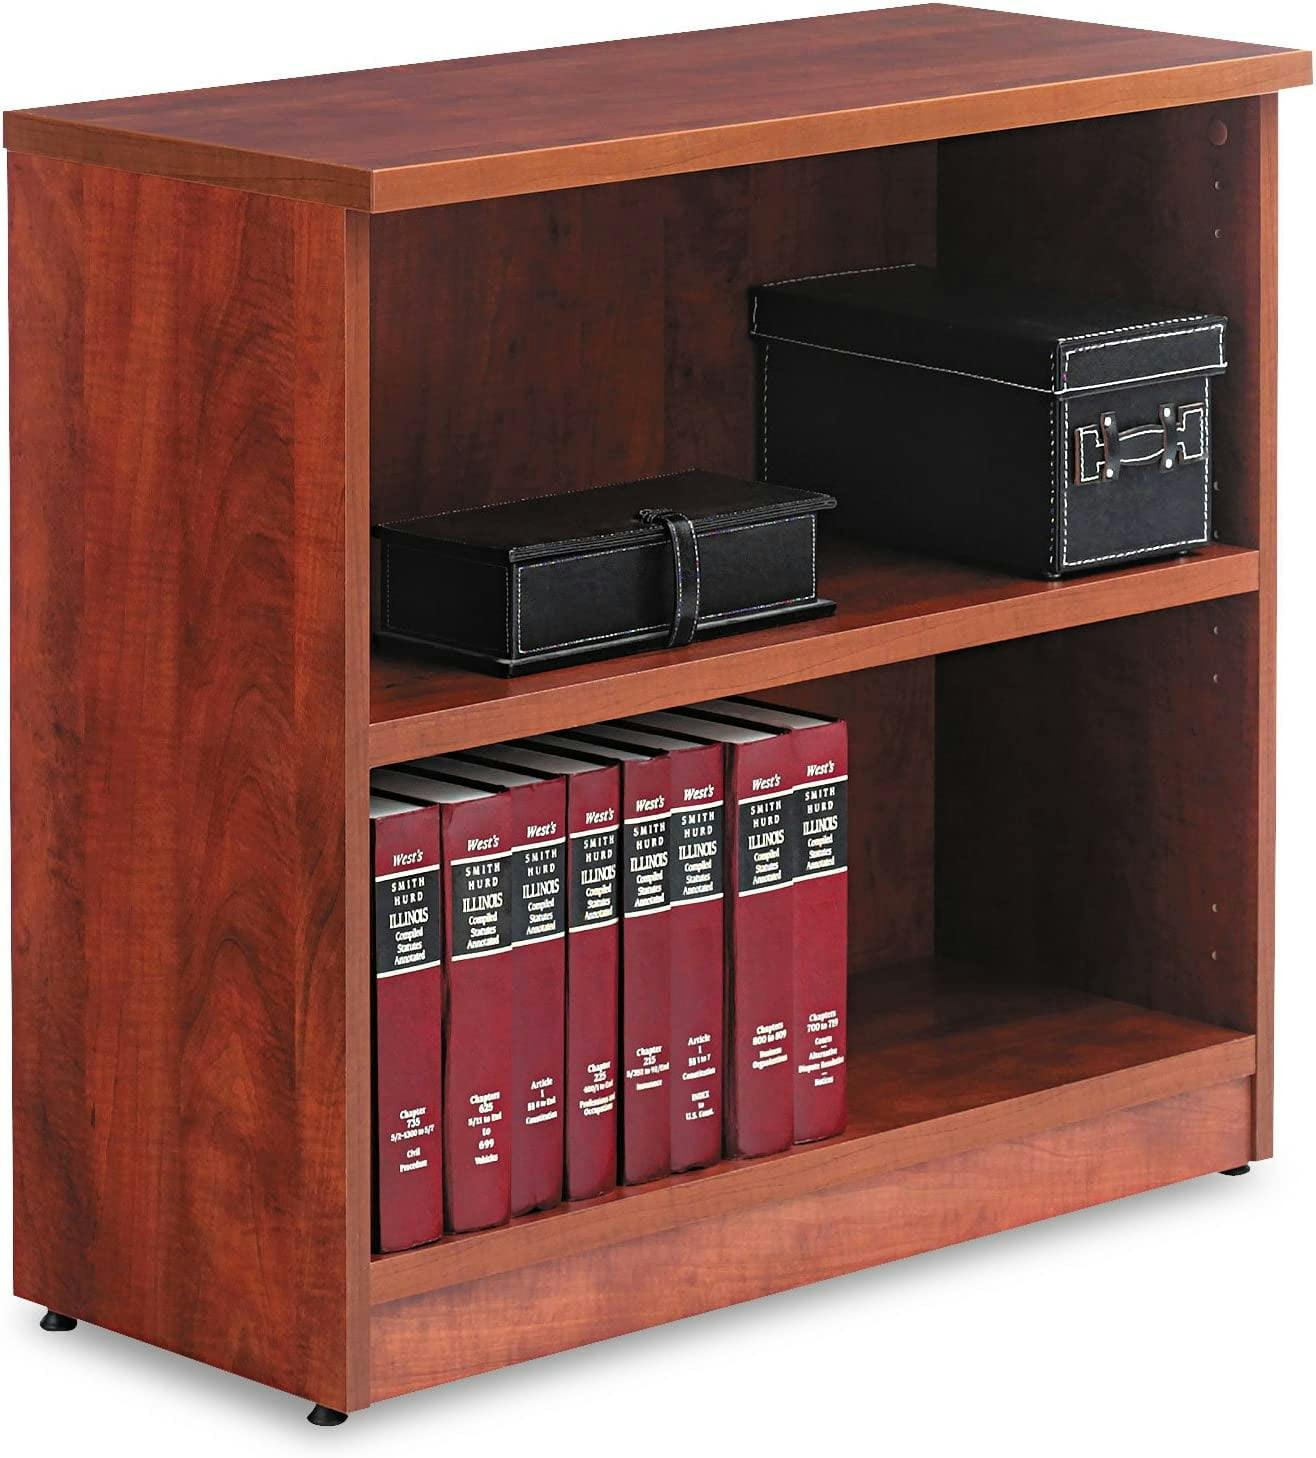 Adjustable Valencia 2-Shelf Bookcase in Espresso Cherry Finish